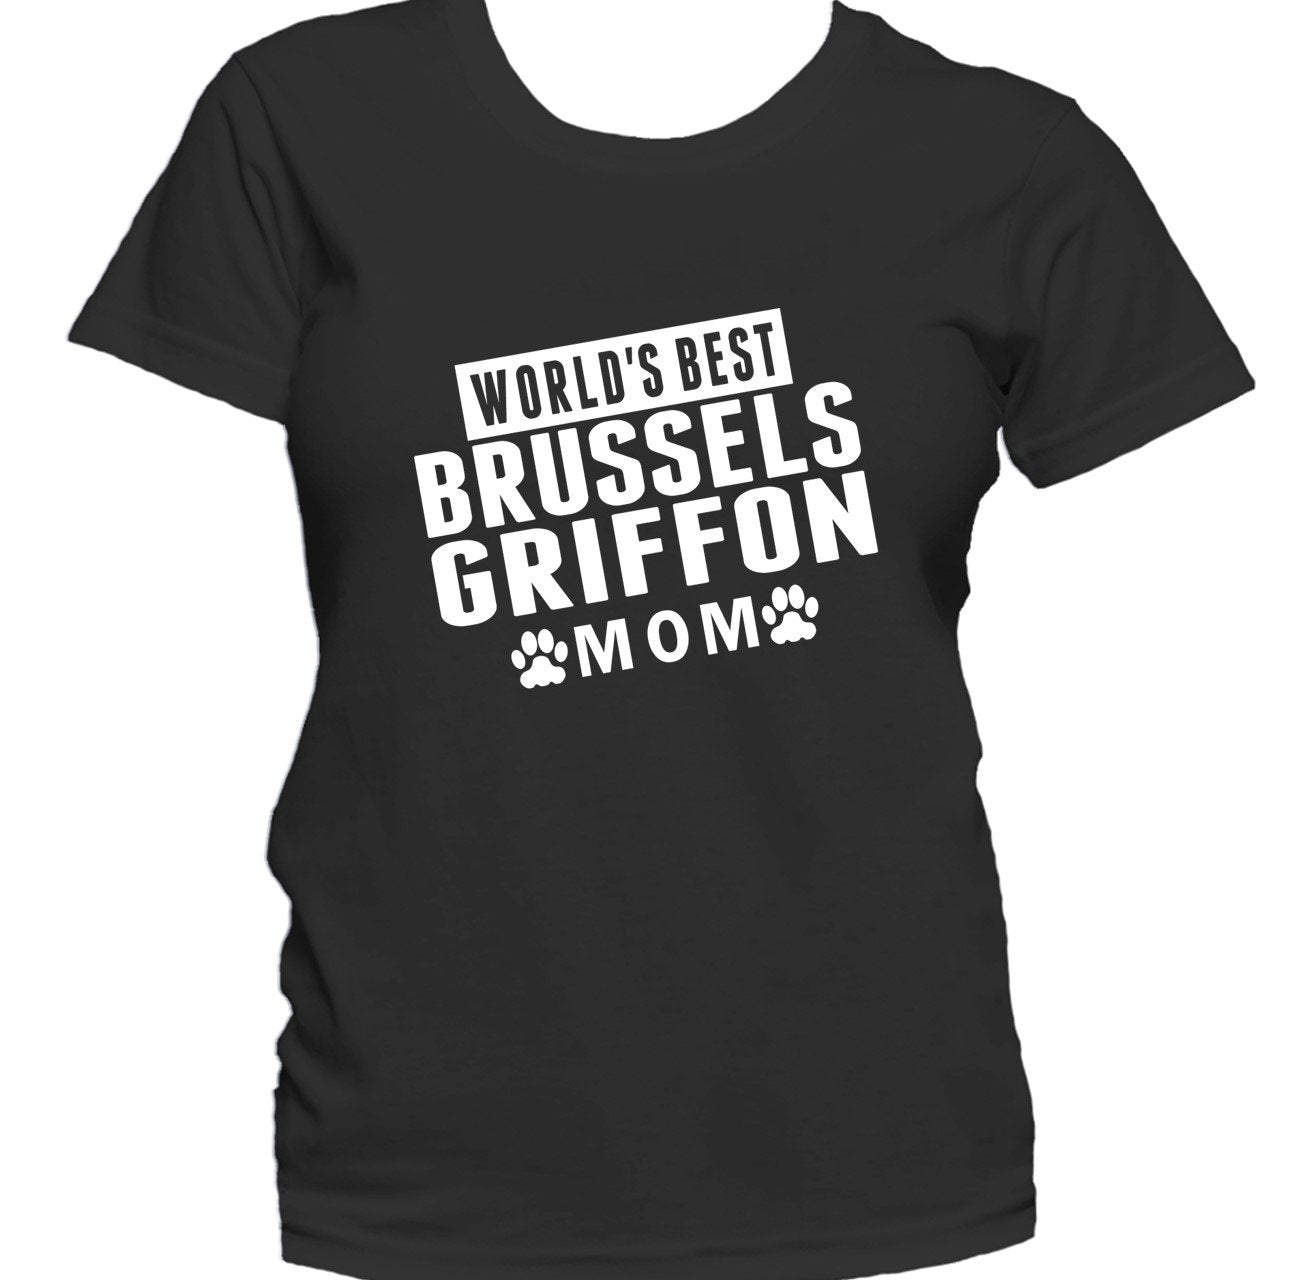 Brussels Griffon Mom Shirt - World's Best Brussels Griffon Mom Women's T-Shirt